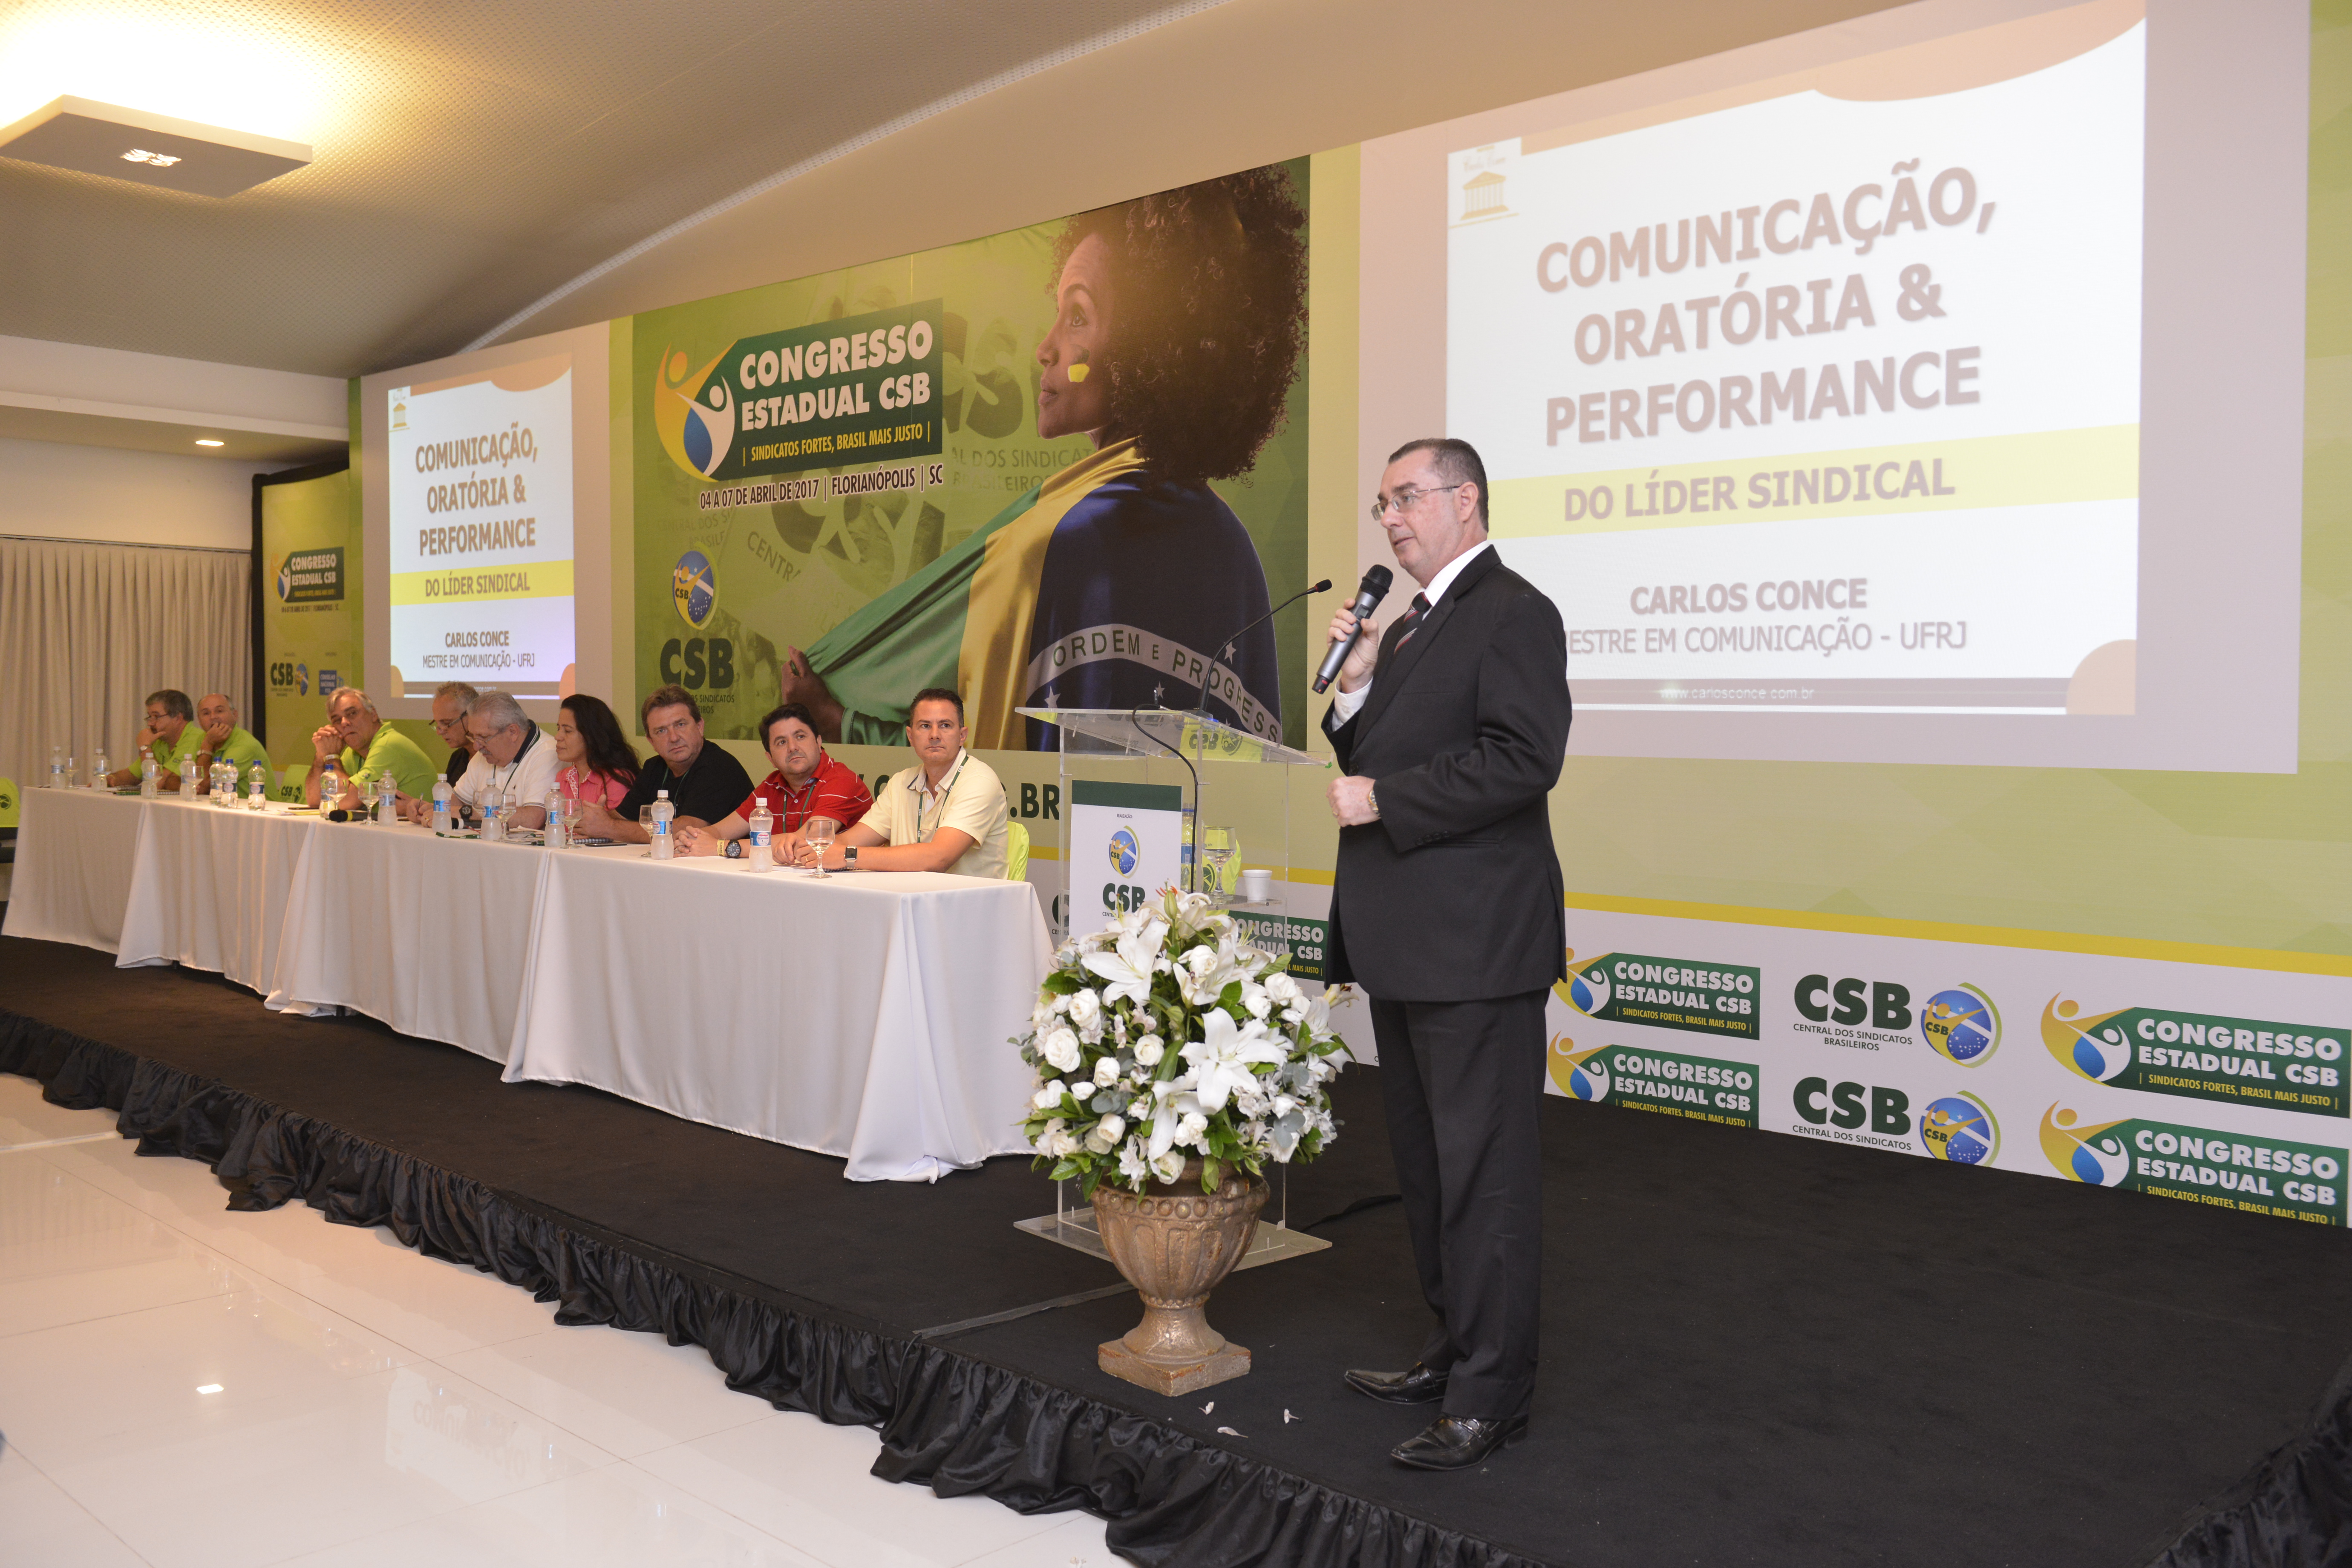 Palestra de Carlos Conce – Congresso Estadual CSB Santa Catarina – 06 de abril | 2017